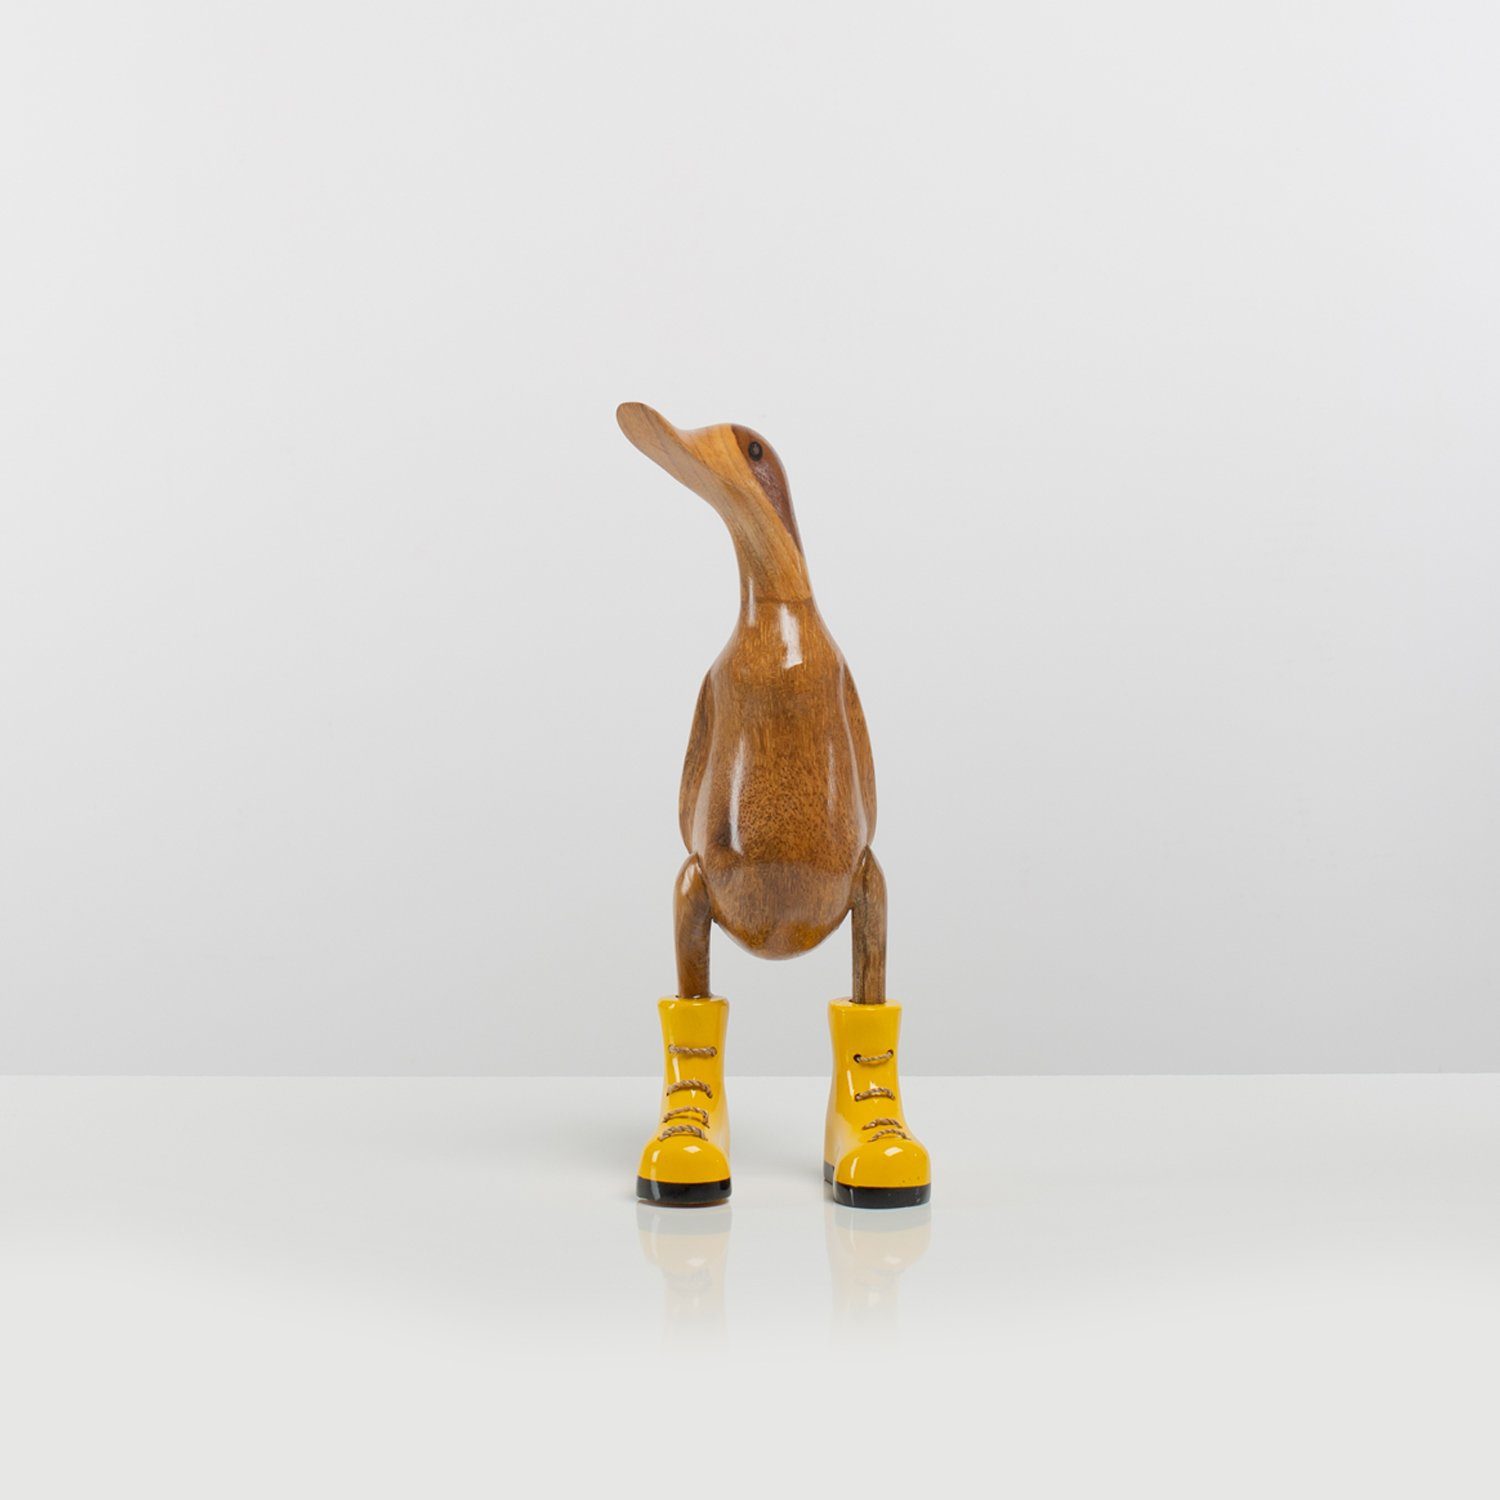 Rikmani Dekofigur Holzfigur Ente Stiefel - Handgefertigte Dekoration aus Holz Geschenk (3-er Set), 3 Holzarten gelb